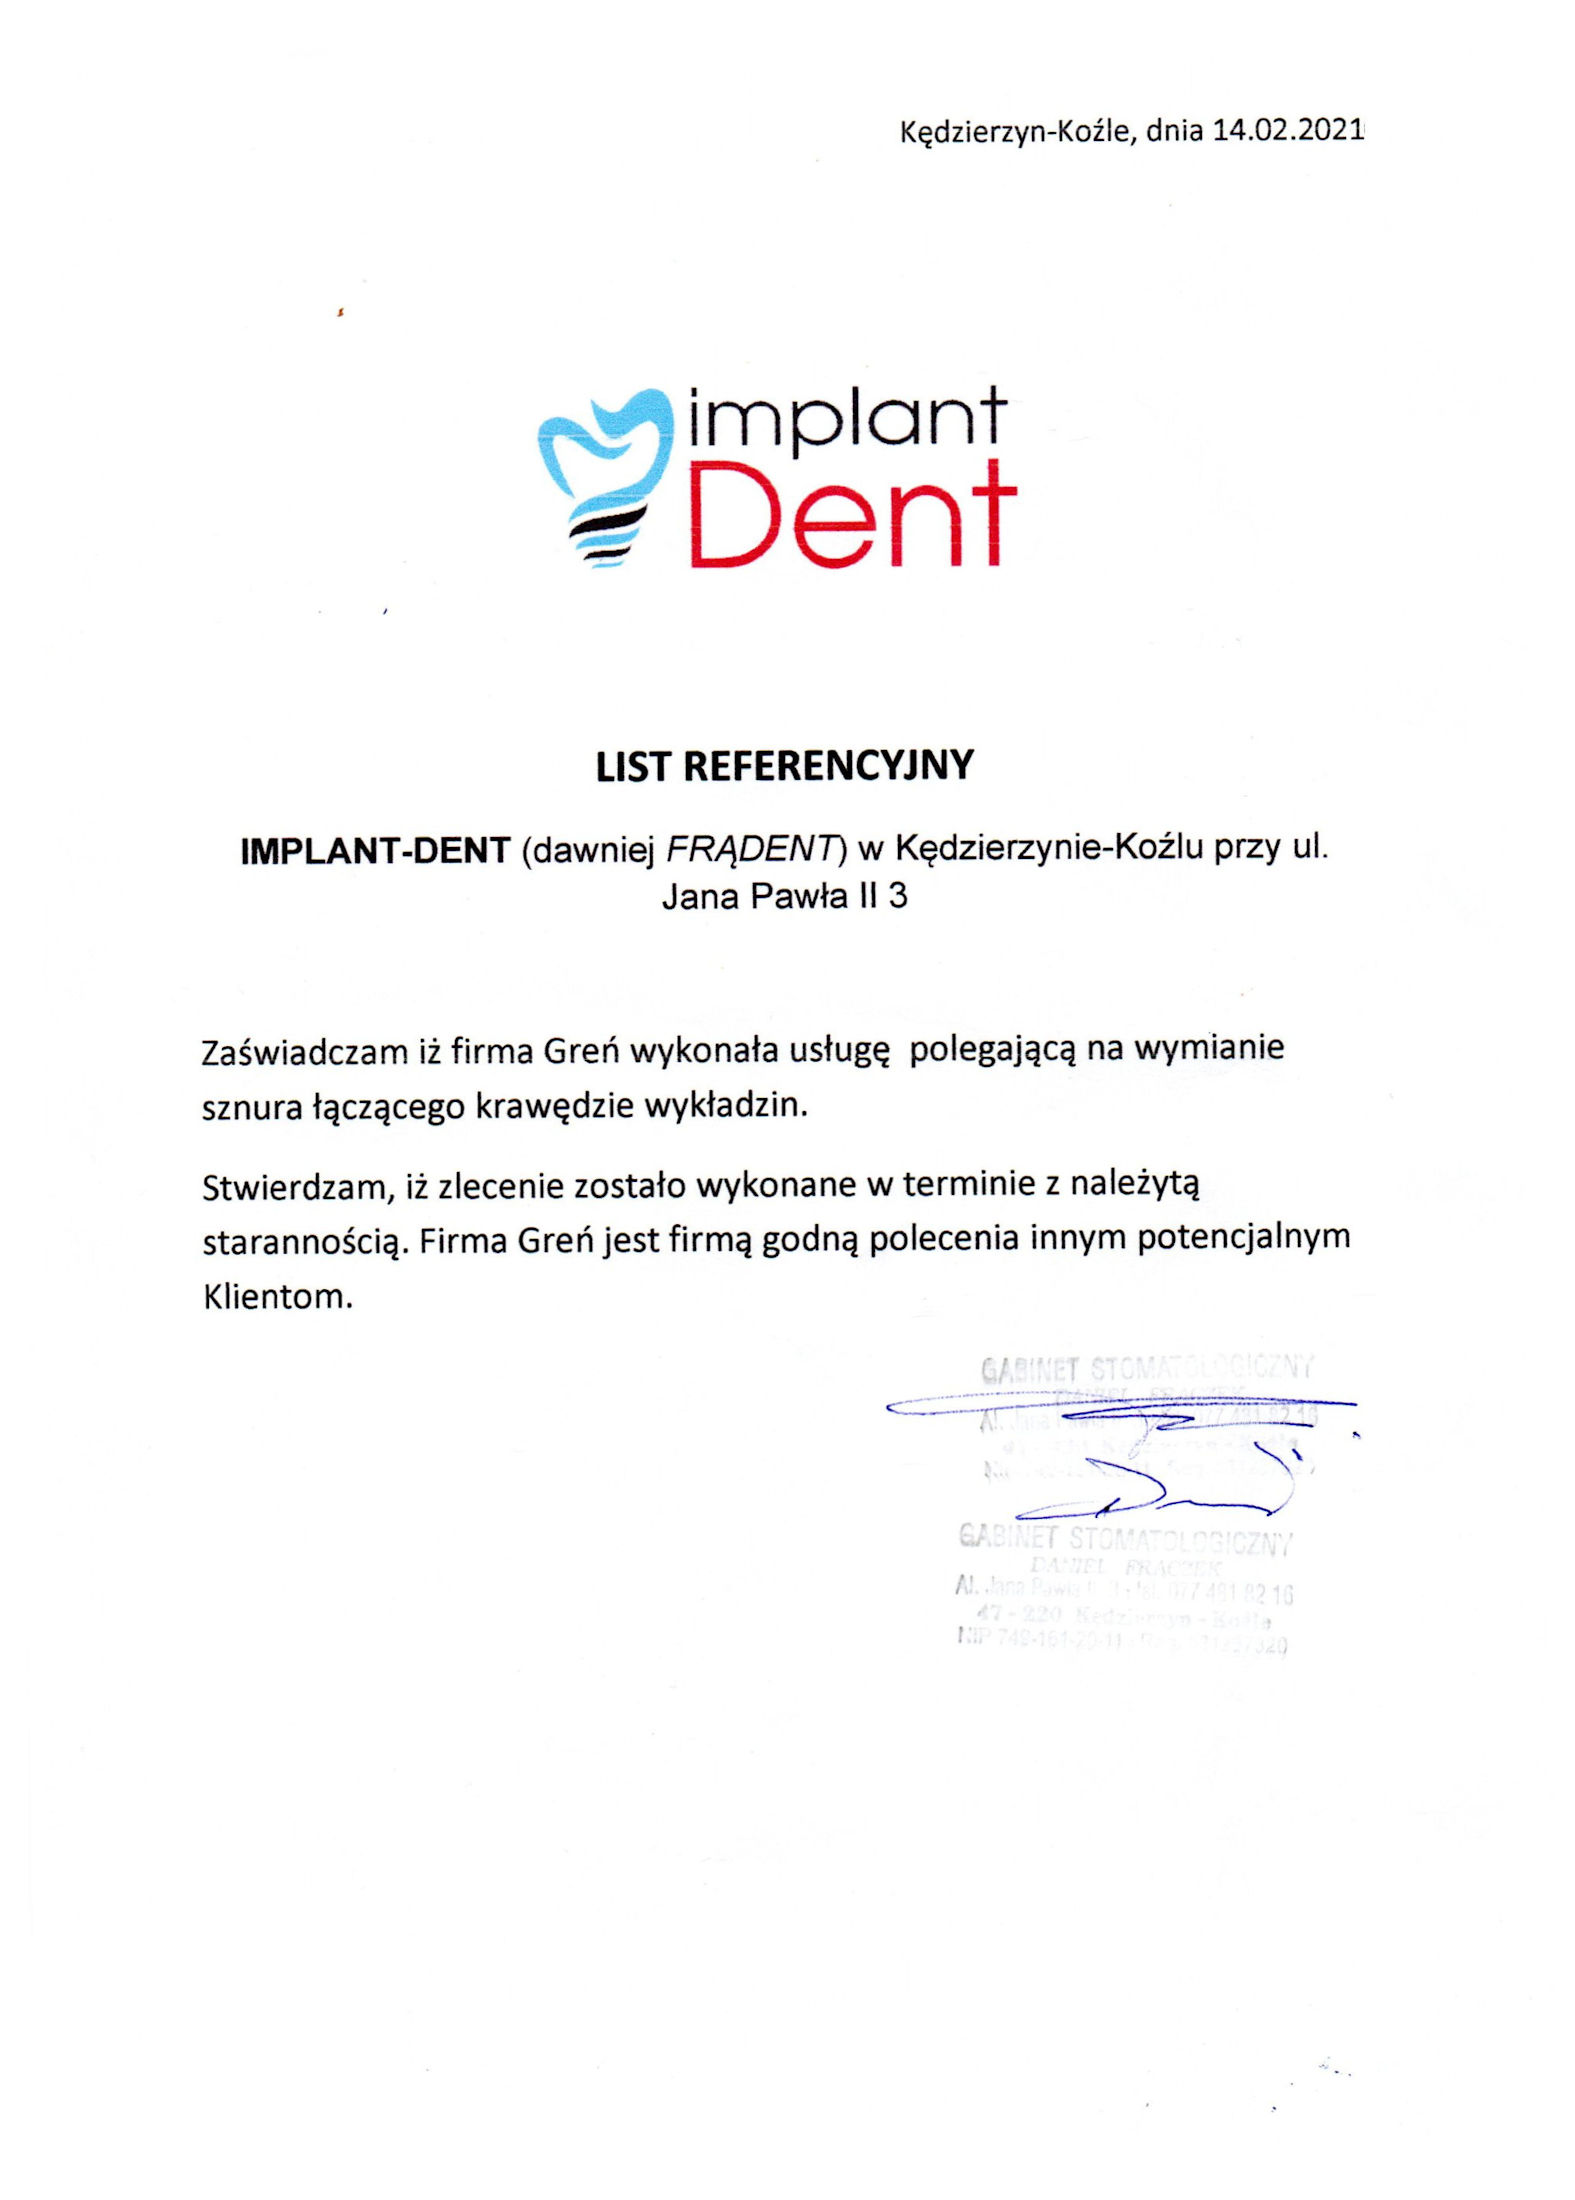 ImplantDent